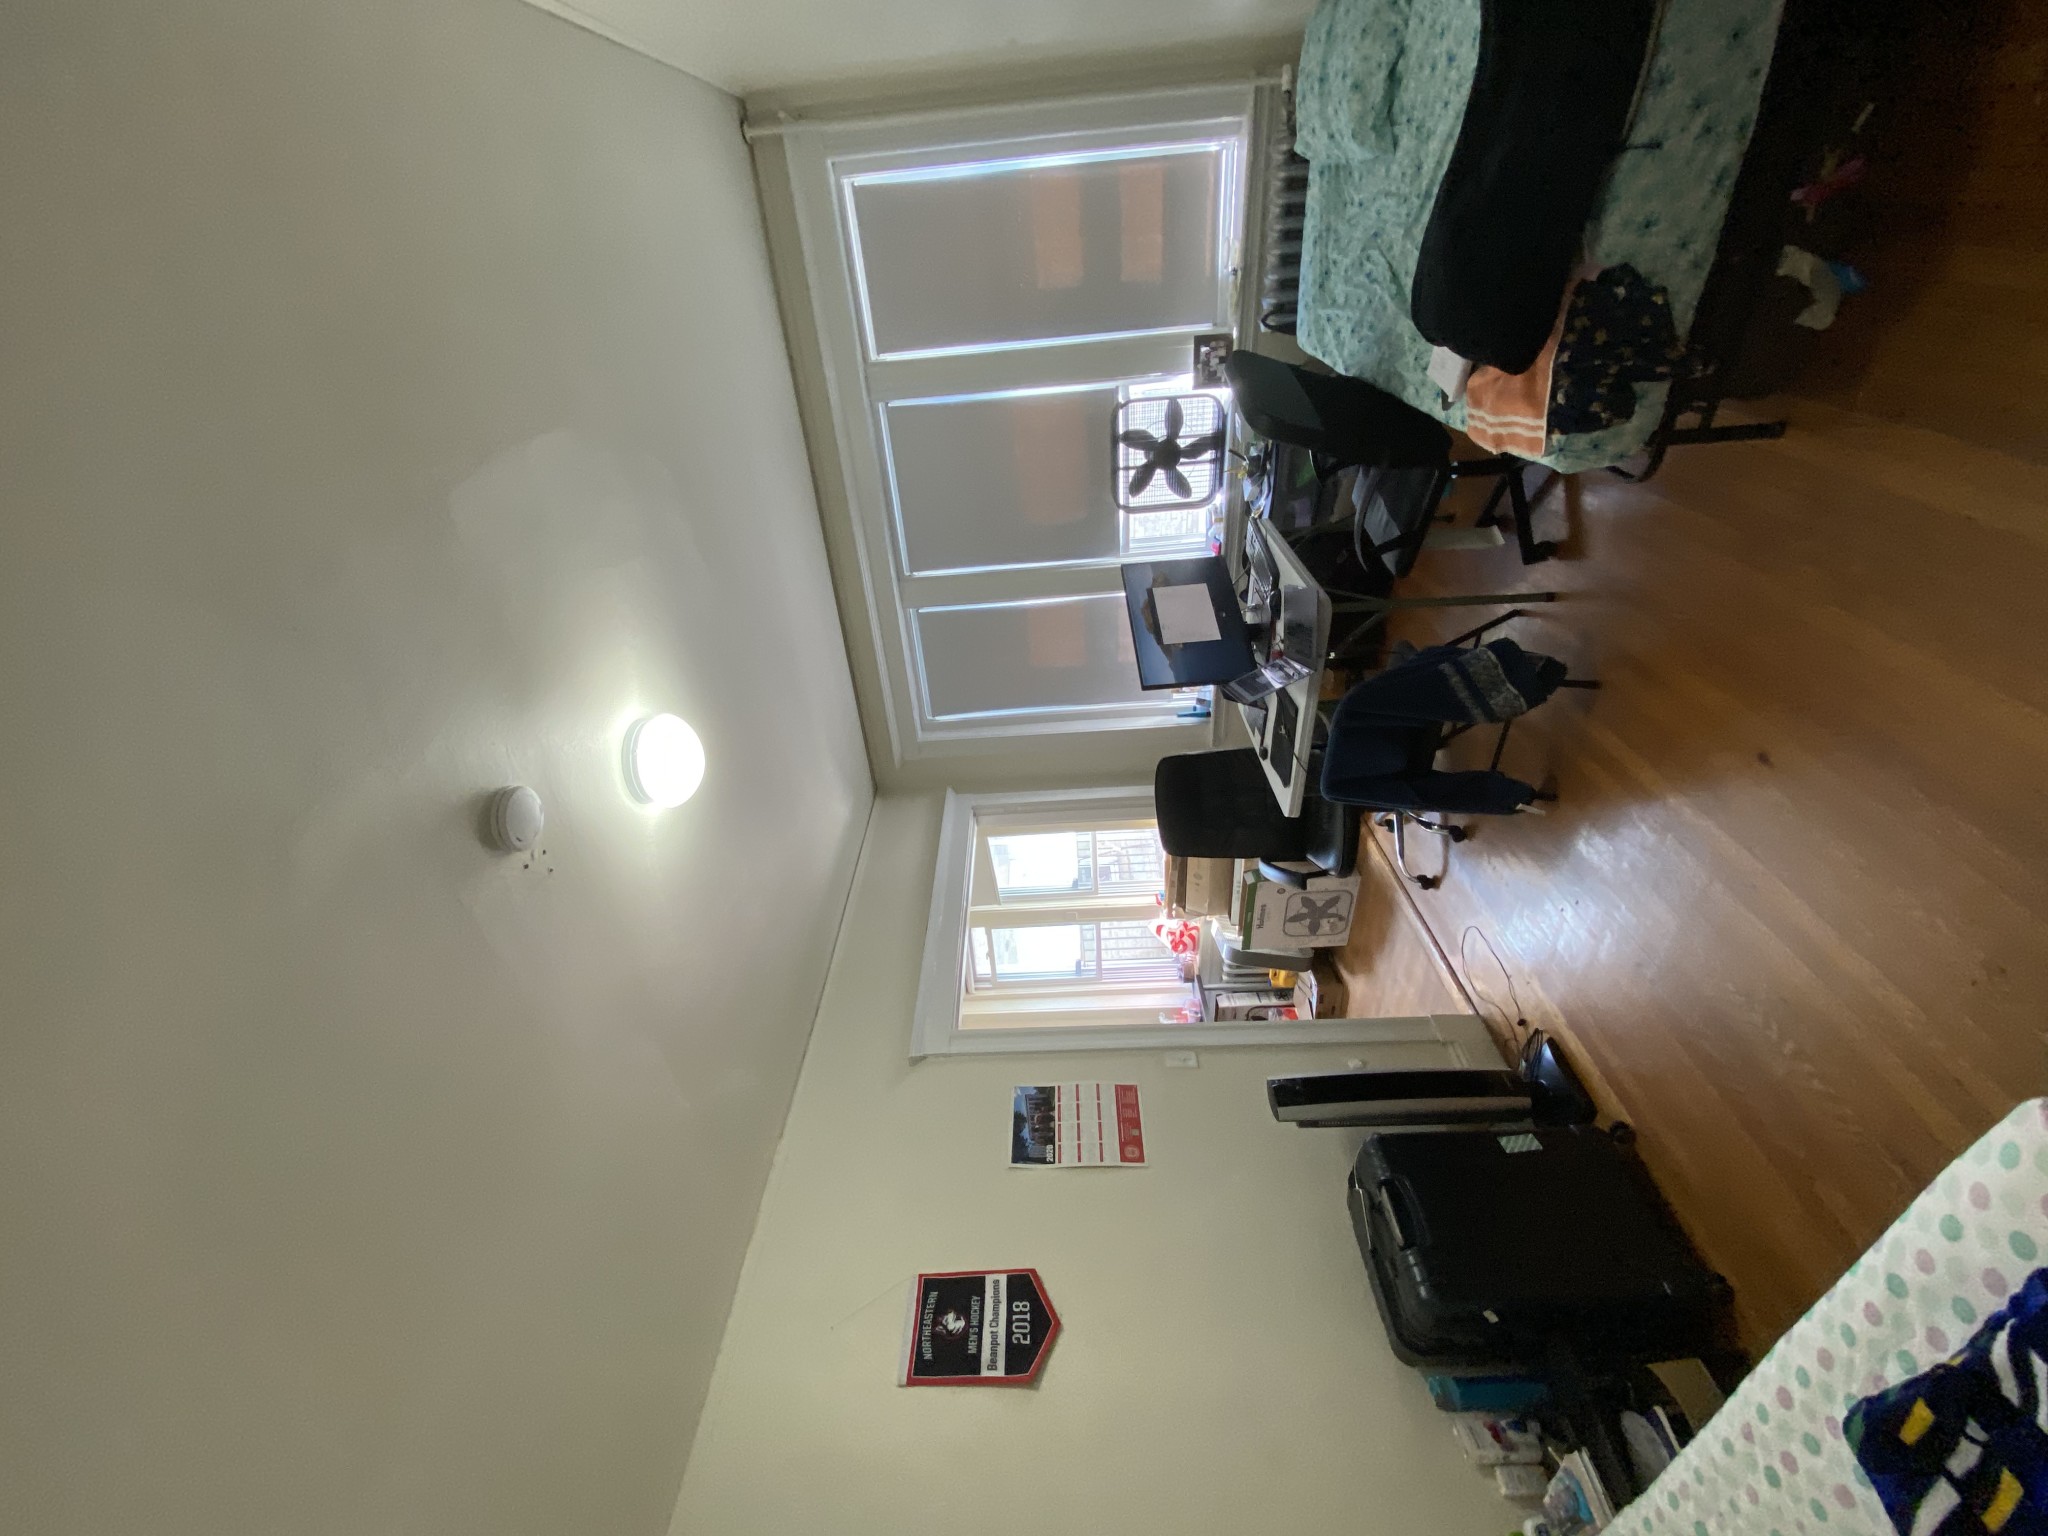 Photos of apartment on Peterborough,Boston MA 02215